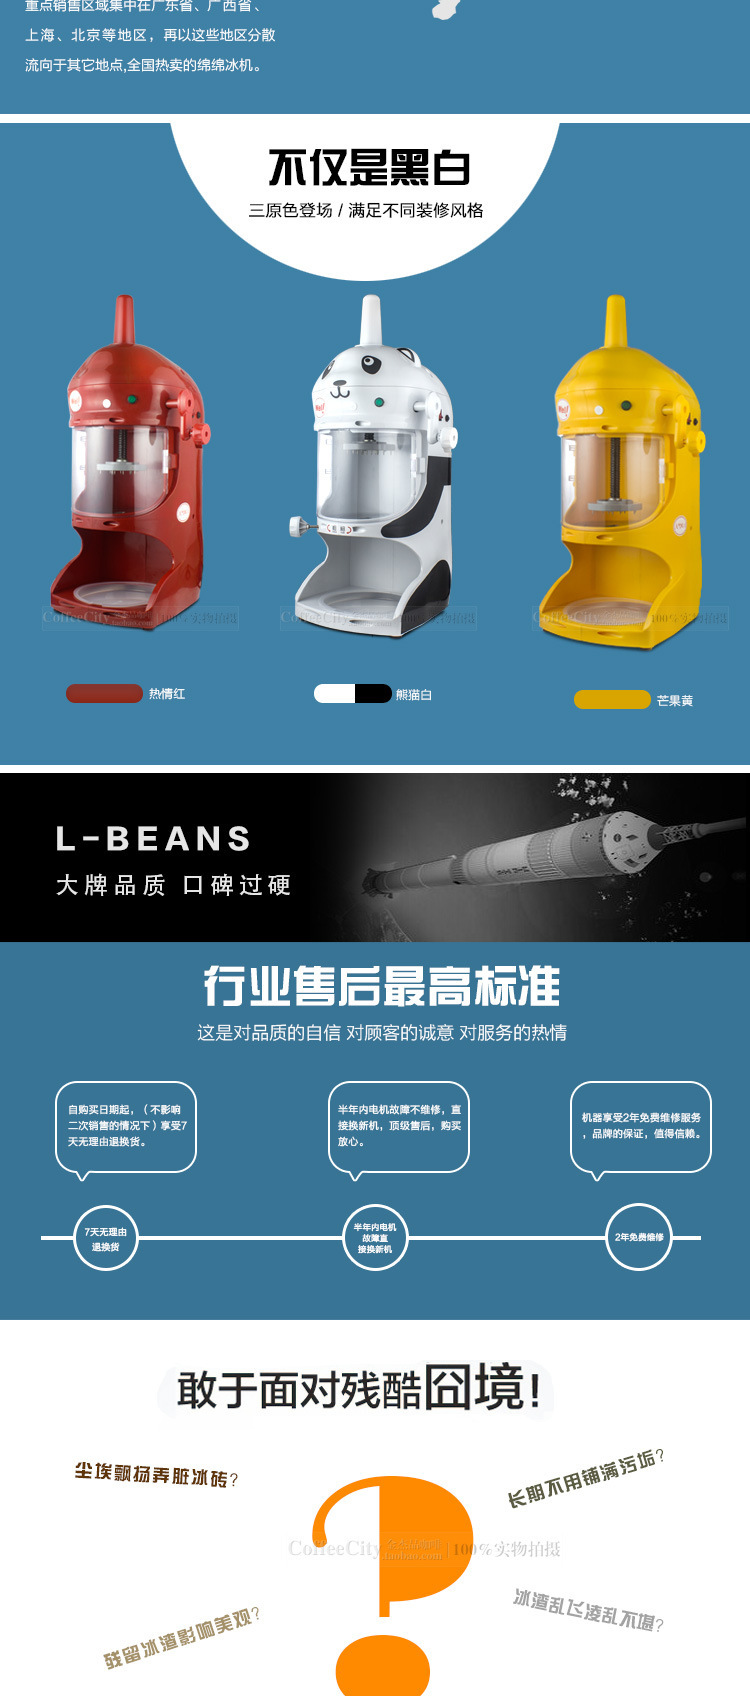 L-BEANS商用绵绵冰机 雪花冰机 碎冰沙机 新款熊猫款绵绵机刨冰机